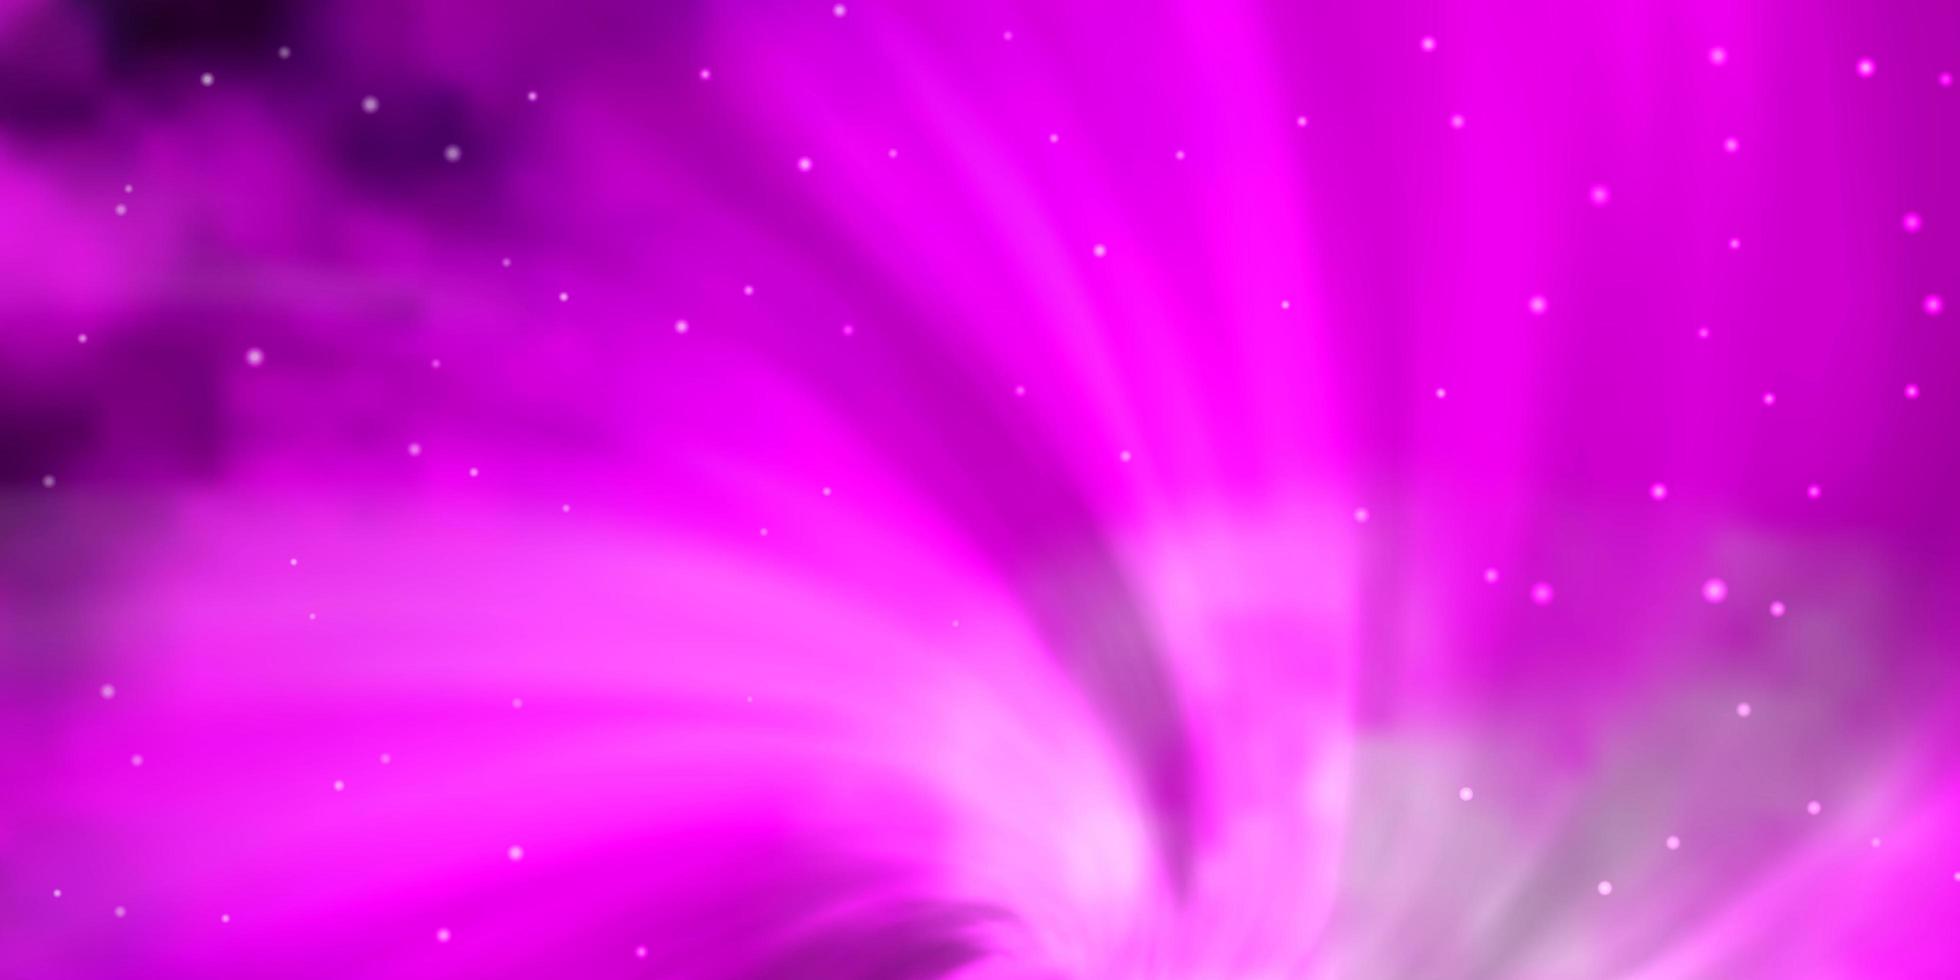 Fondo de vector rosa claro con estrellas de colores.